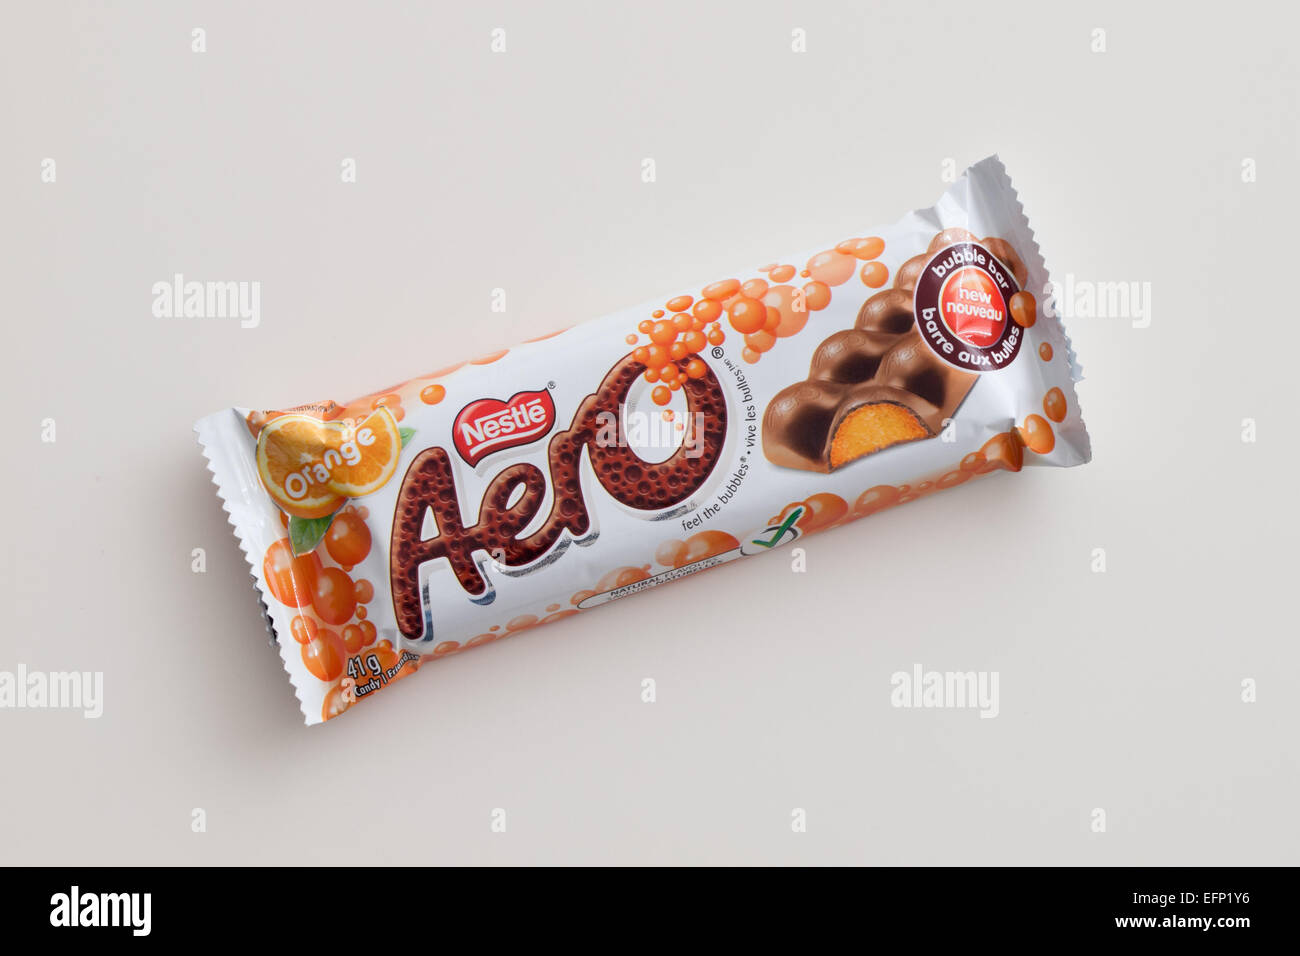 Une barre de chocolat Orange Aero, produit par Nestlé. Emballage canadien illustré. Banque D'Images